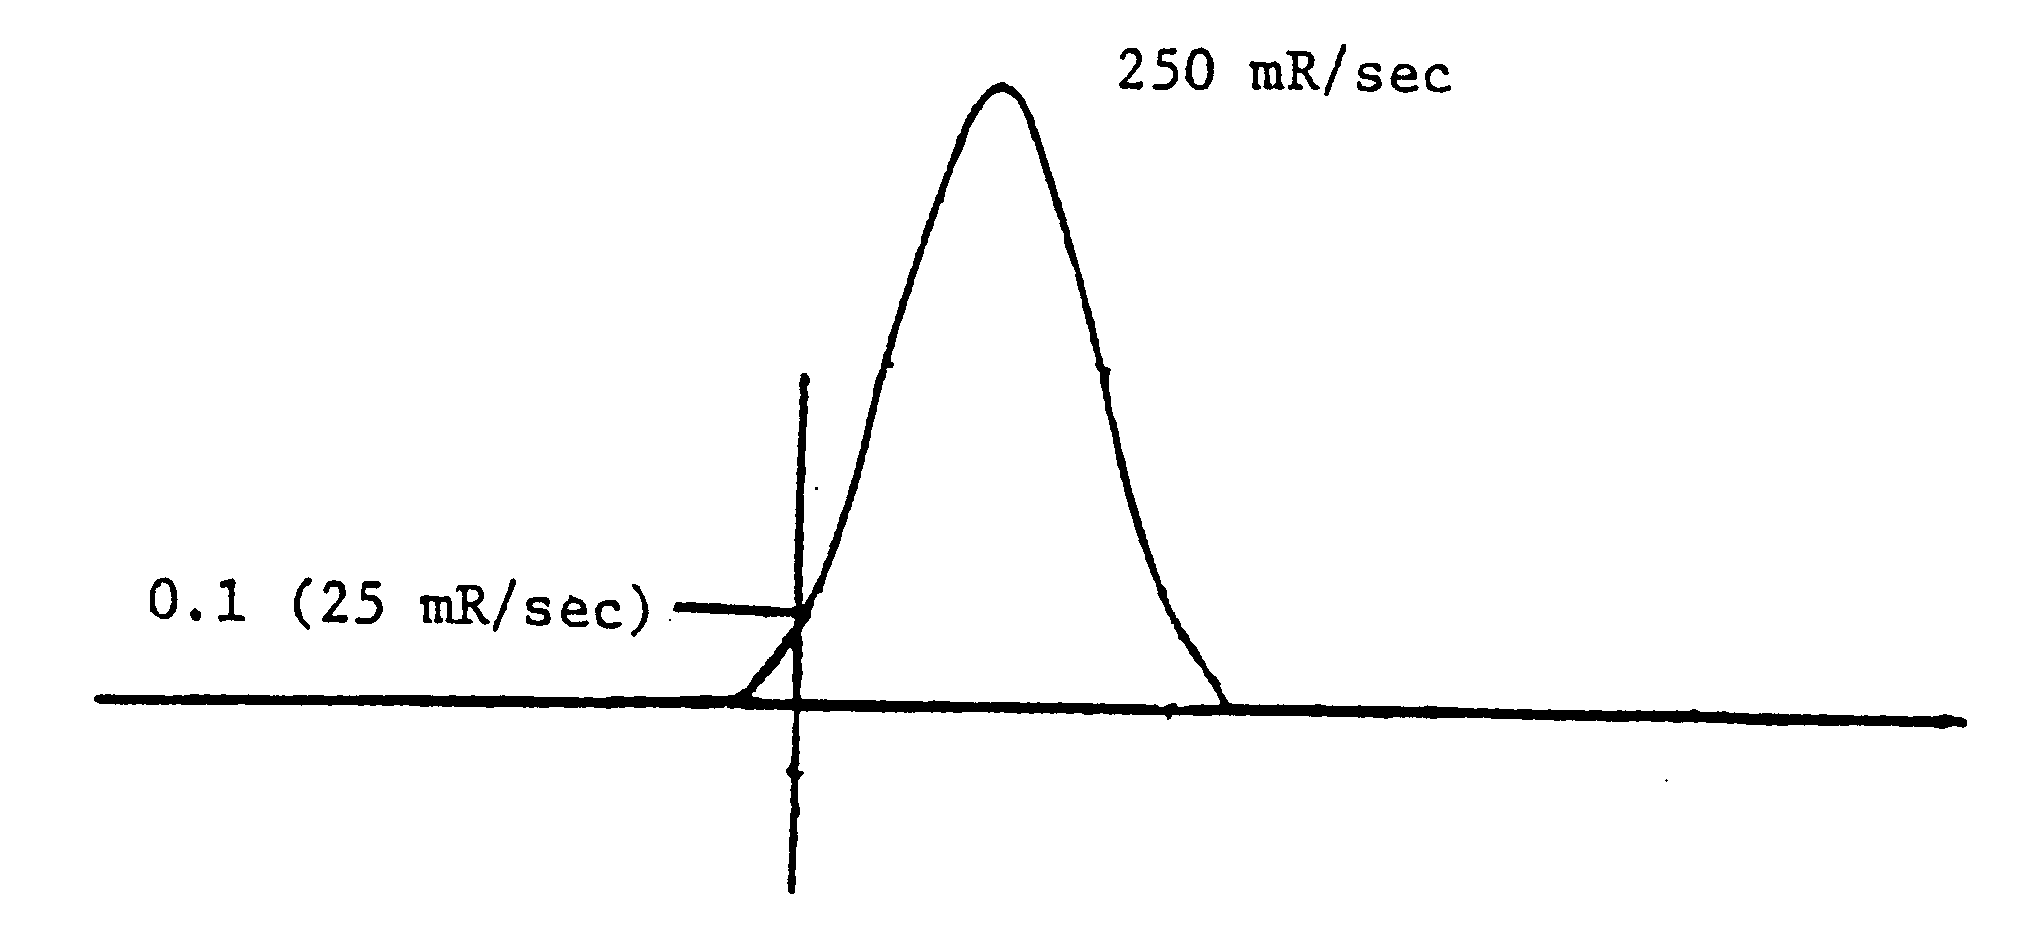 Figure 7. Radiation pulse